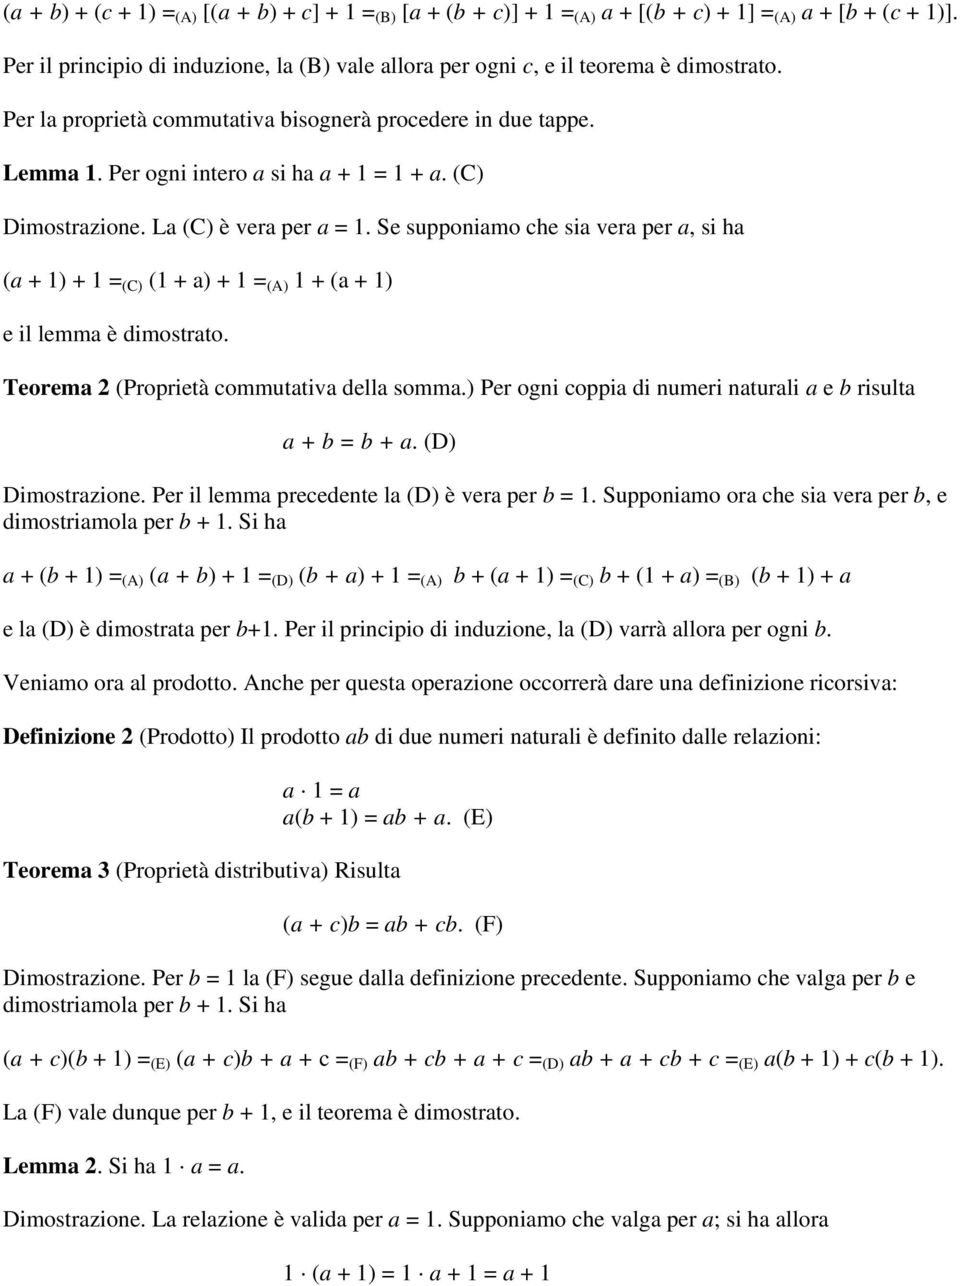 (C) Dimostrazione. La (C) è vera per a = 1. Se supponiamo che sia vera per a, si ha (a + 1) + 1 = (C) (1 + a) + 1 = (A) 1 + (a + 1) e il lemma è dimostrato.